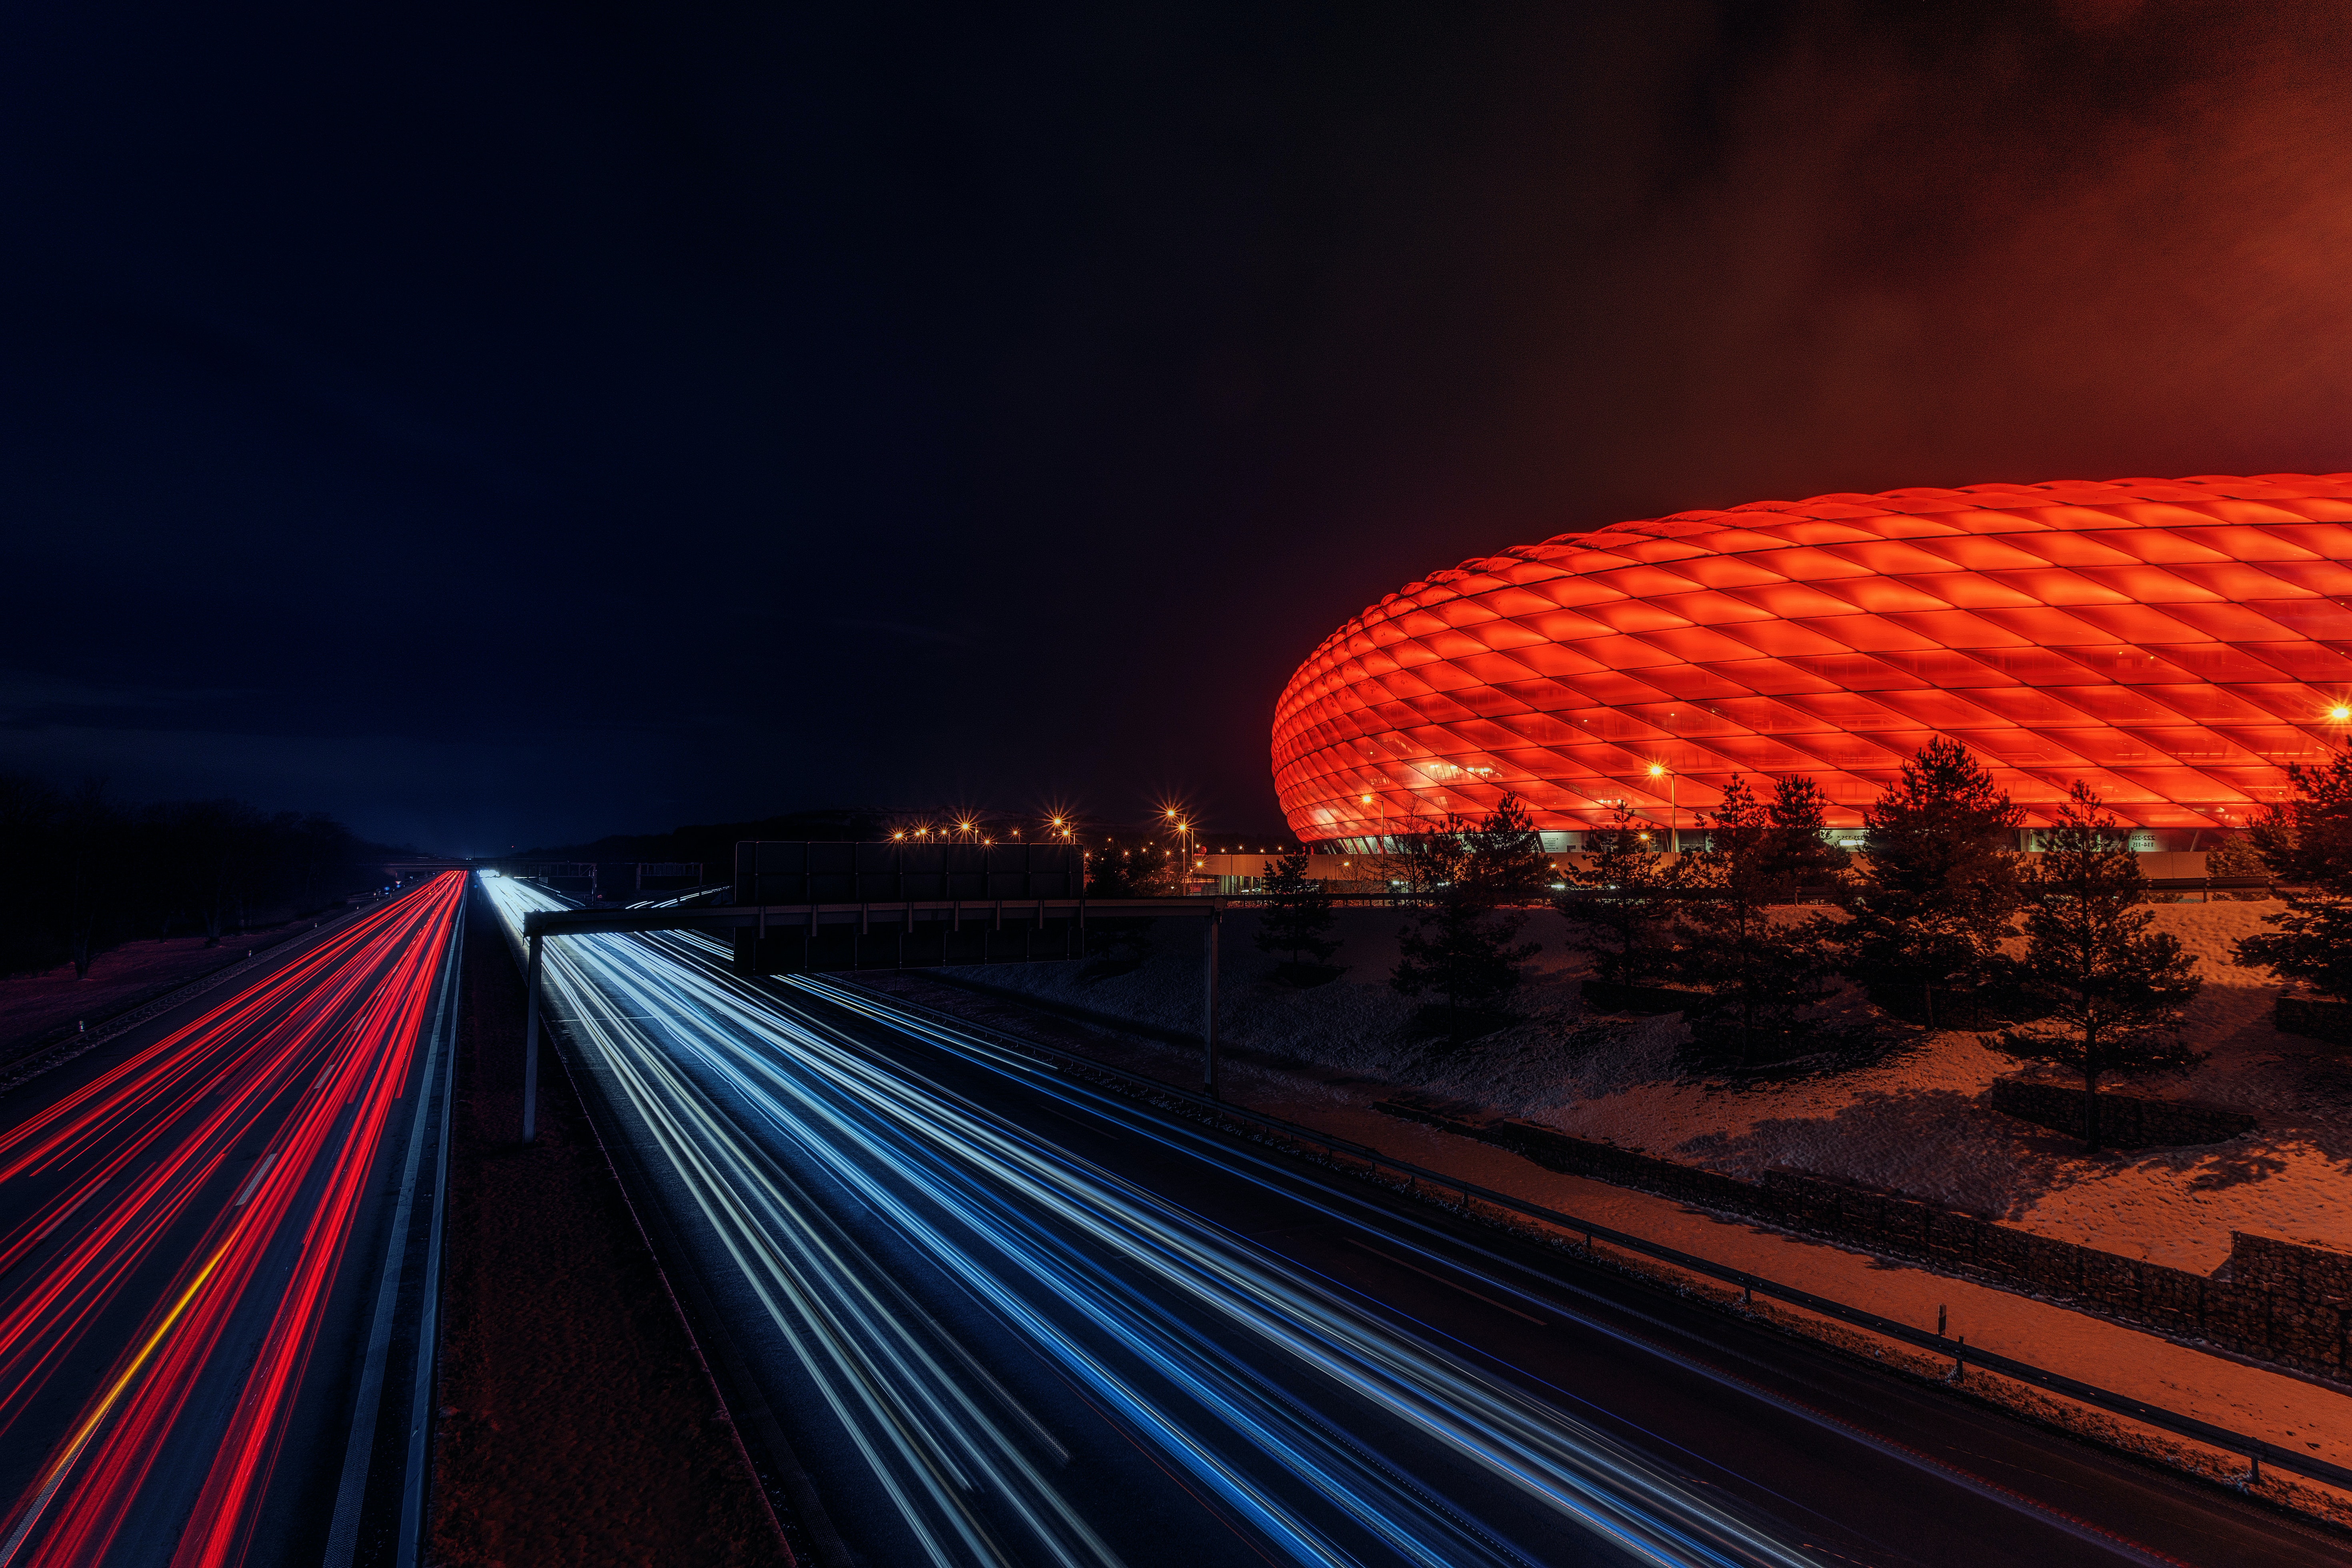 Zuge Zurich-Muenchen: Die beruhmte beleuchtete Allianz-Arena